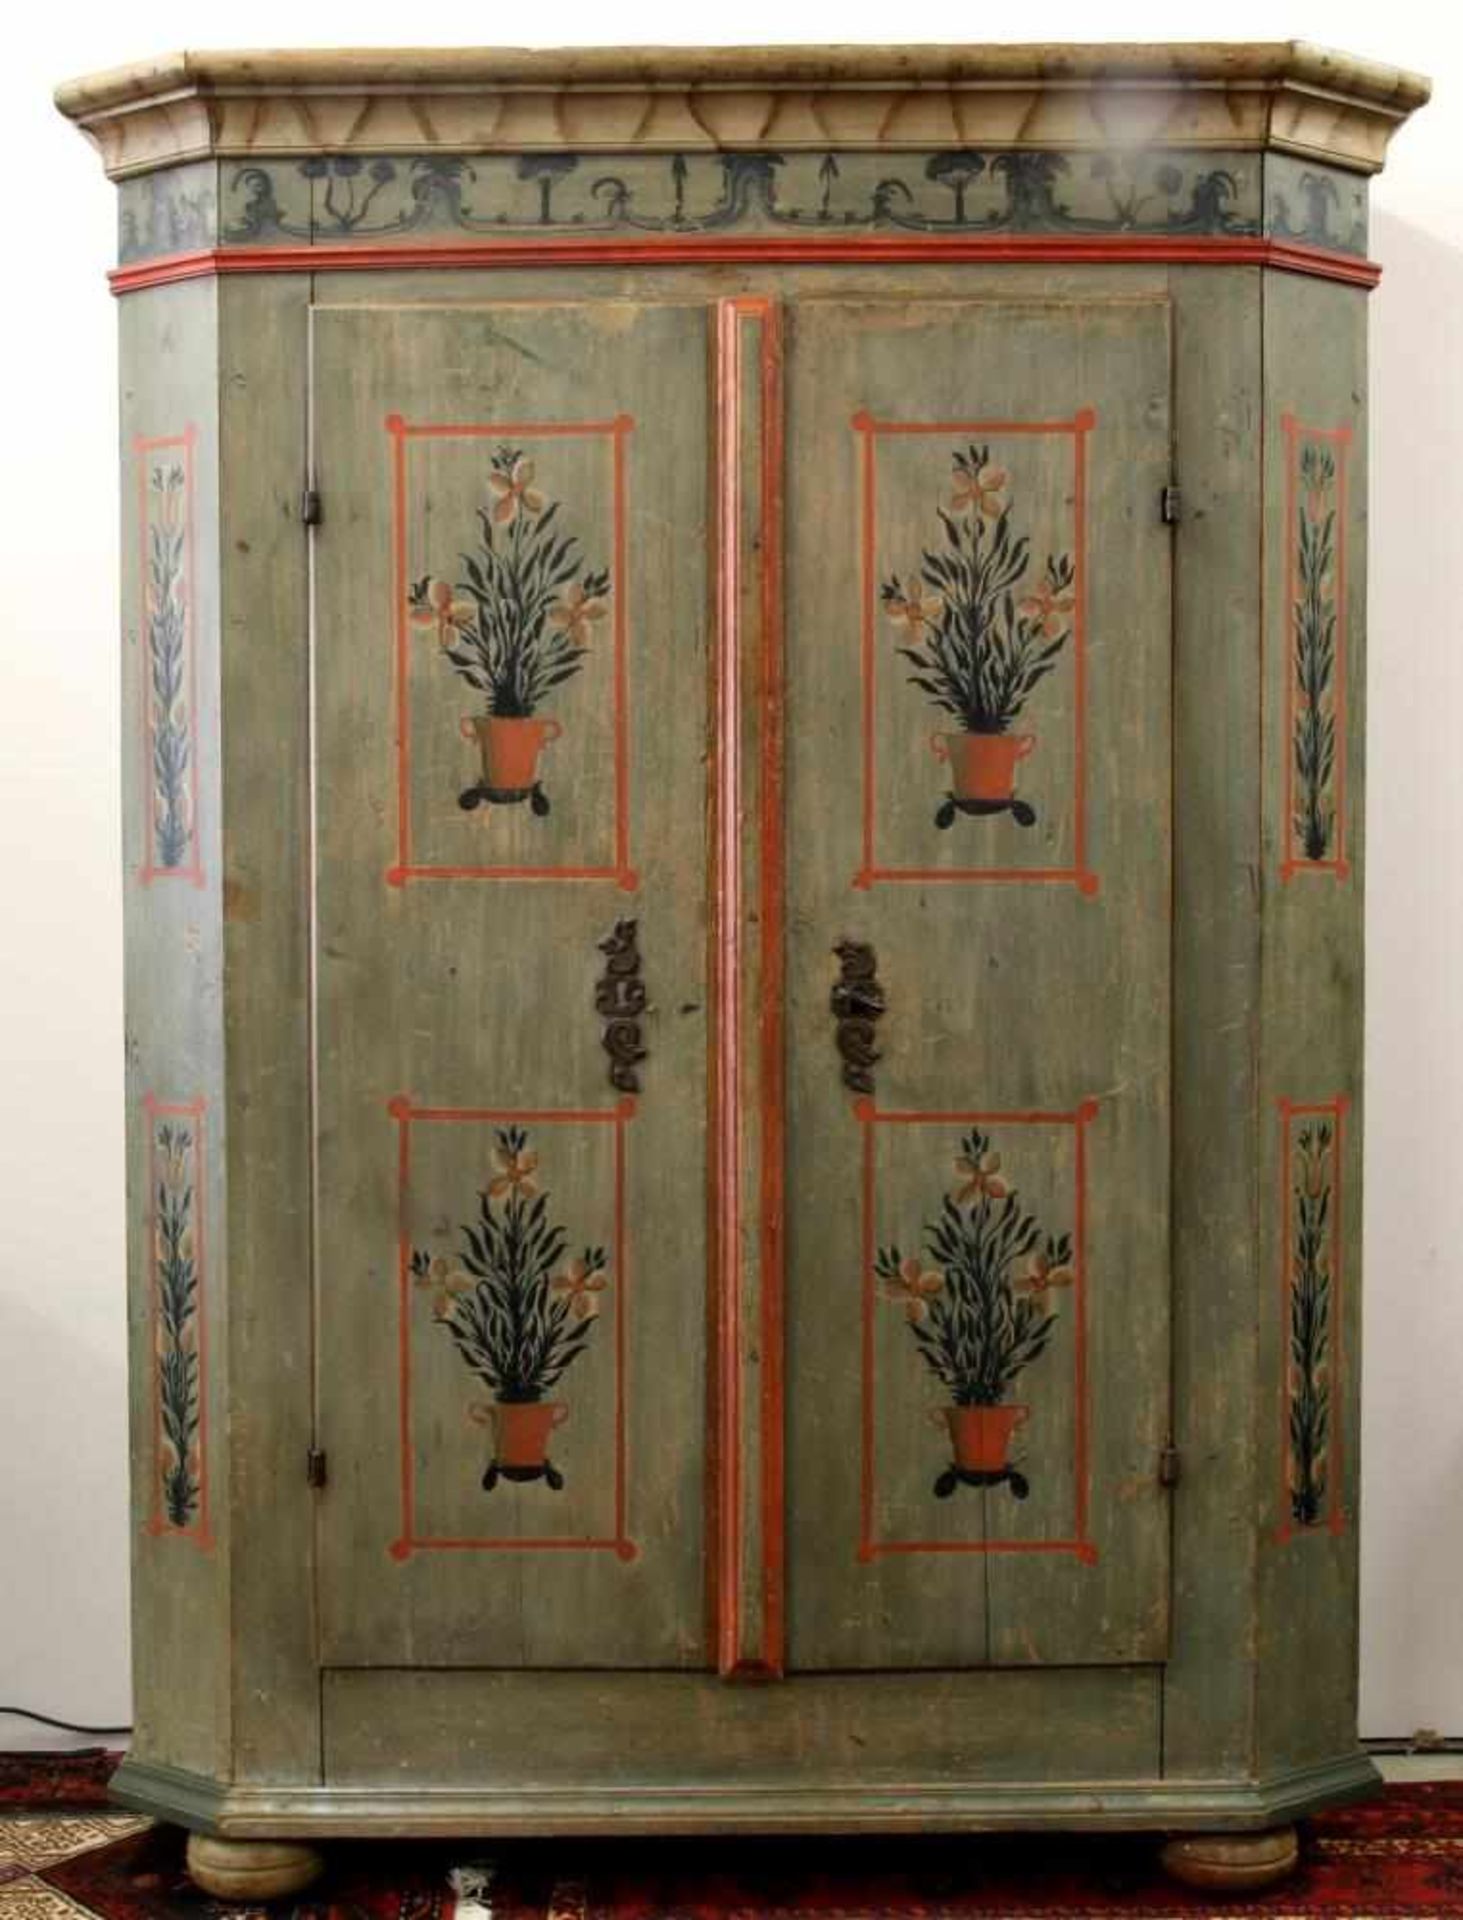 Bauernschrank mit floralem Dekor Bodenseeraum, 18. Jahrhundert. Nadelholz, polychrom gefasst.